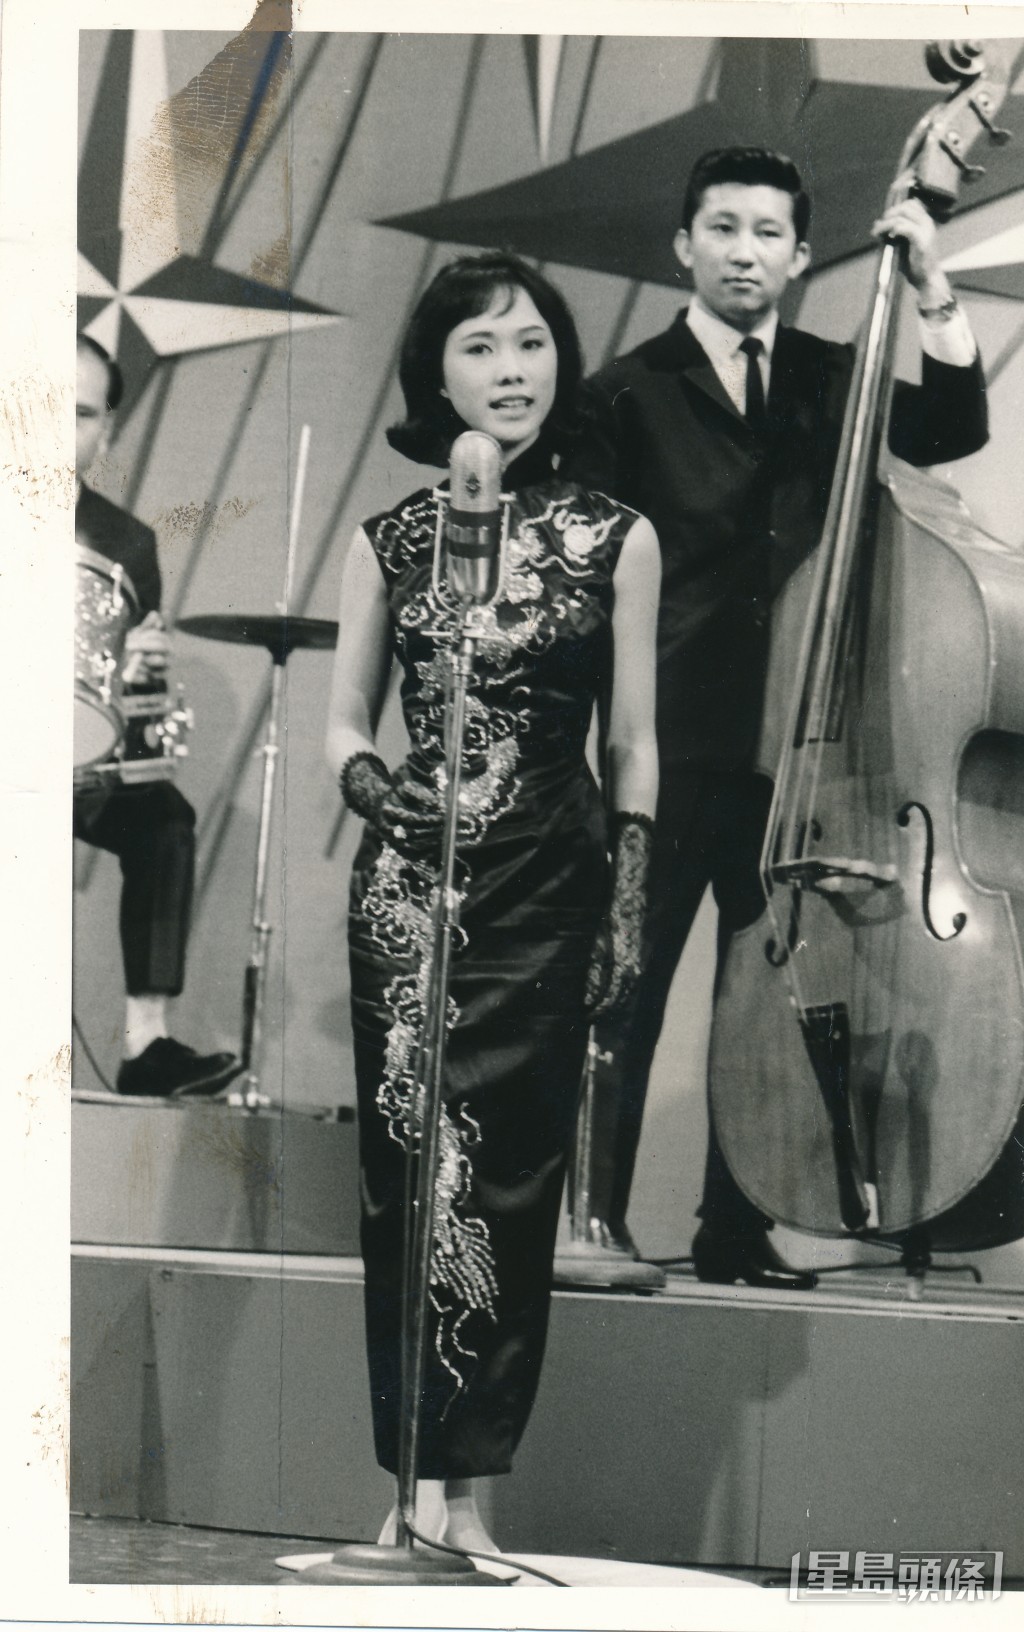 星島晚報主辦「1965年第六屆業餘歌唱比賽」電視頒獎演出，早前得獎的四組冠亞季軍昨晚在麗的呼聲電視表演，國語曲組冠軍劉鳳屏演出。